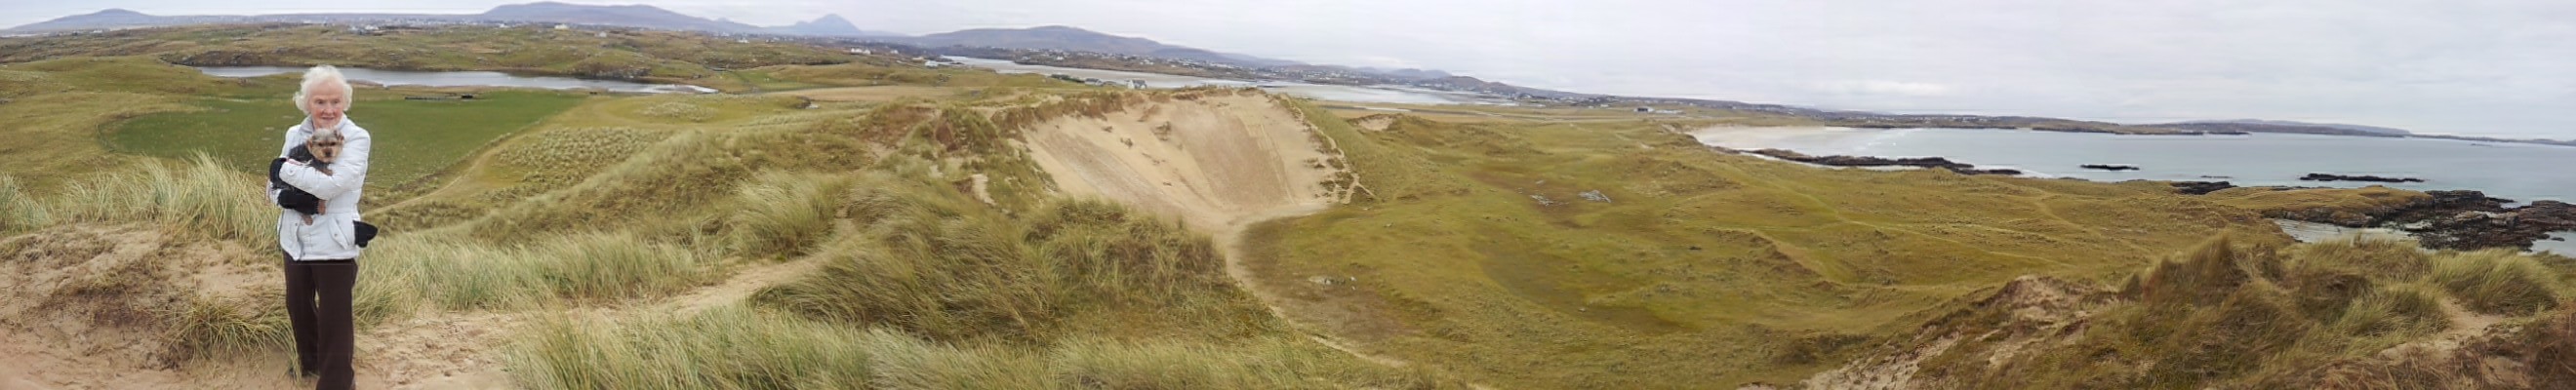 Carrickfinn Dunes and Grasslands